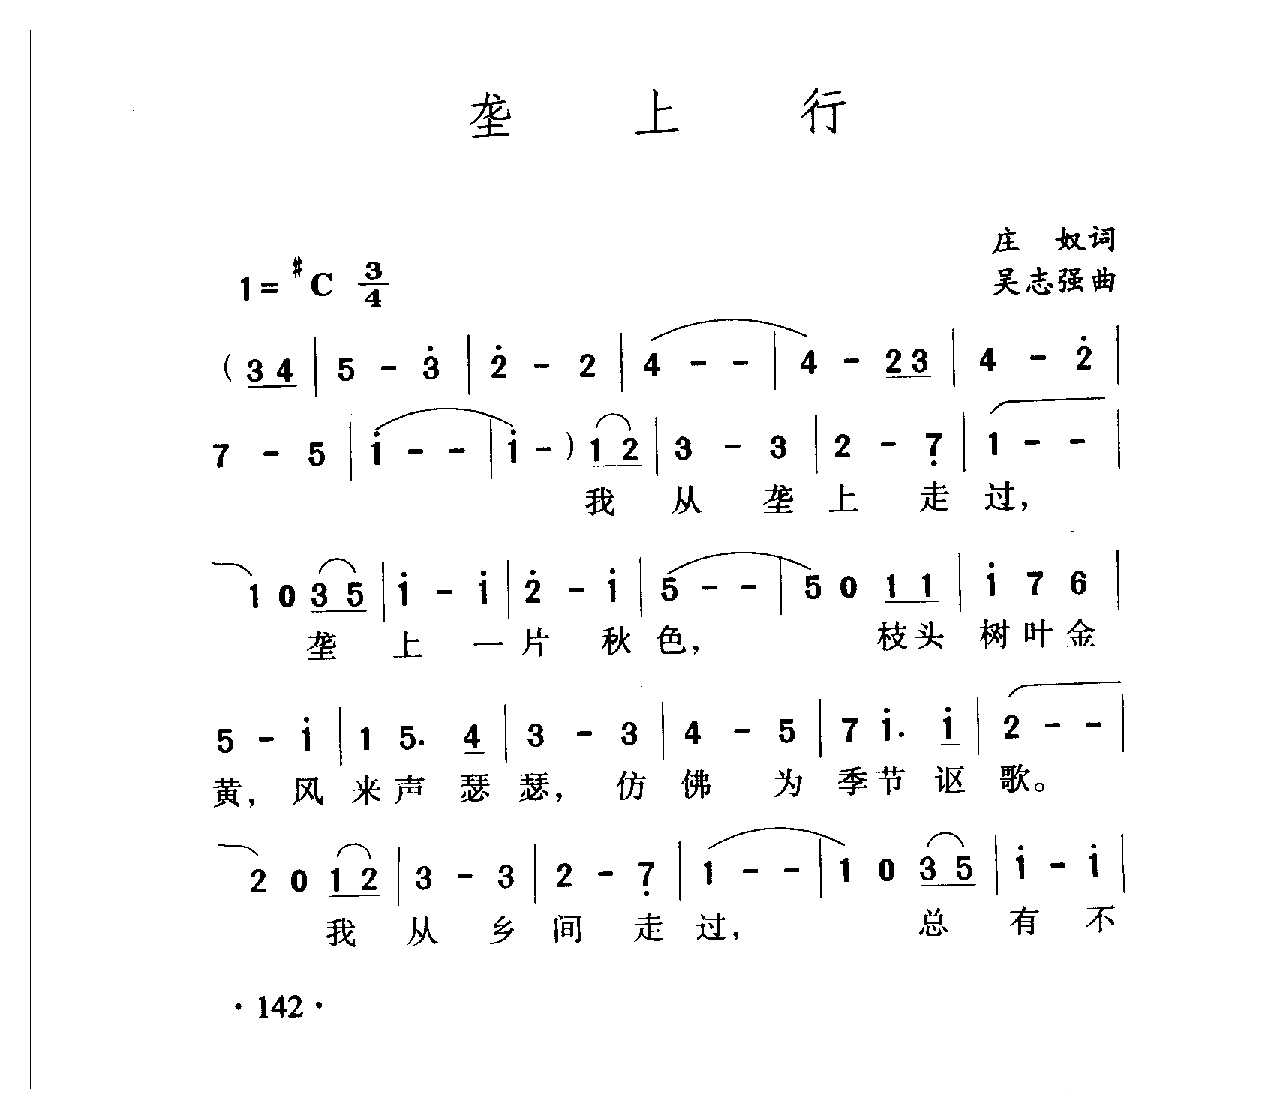 中国名歌[垄上行]乐谱